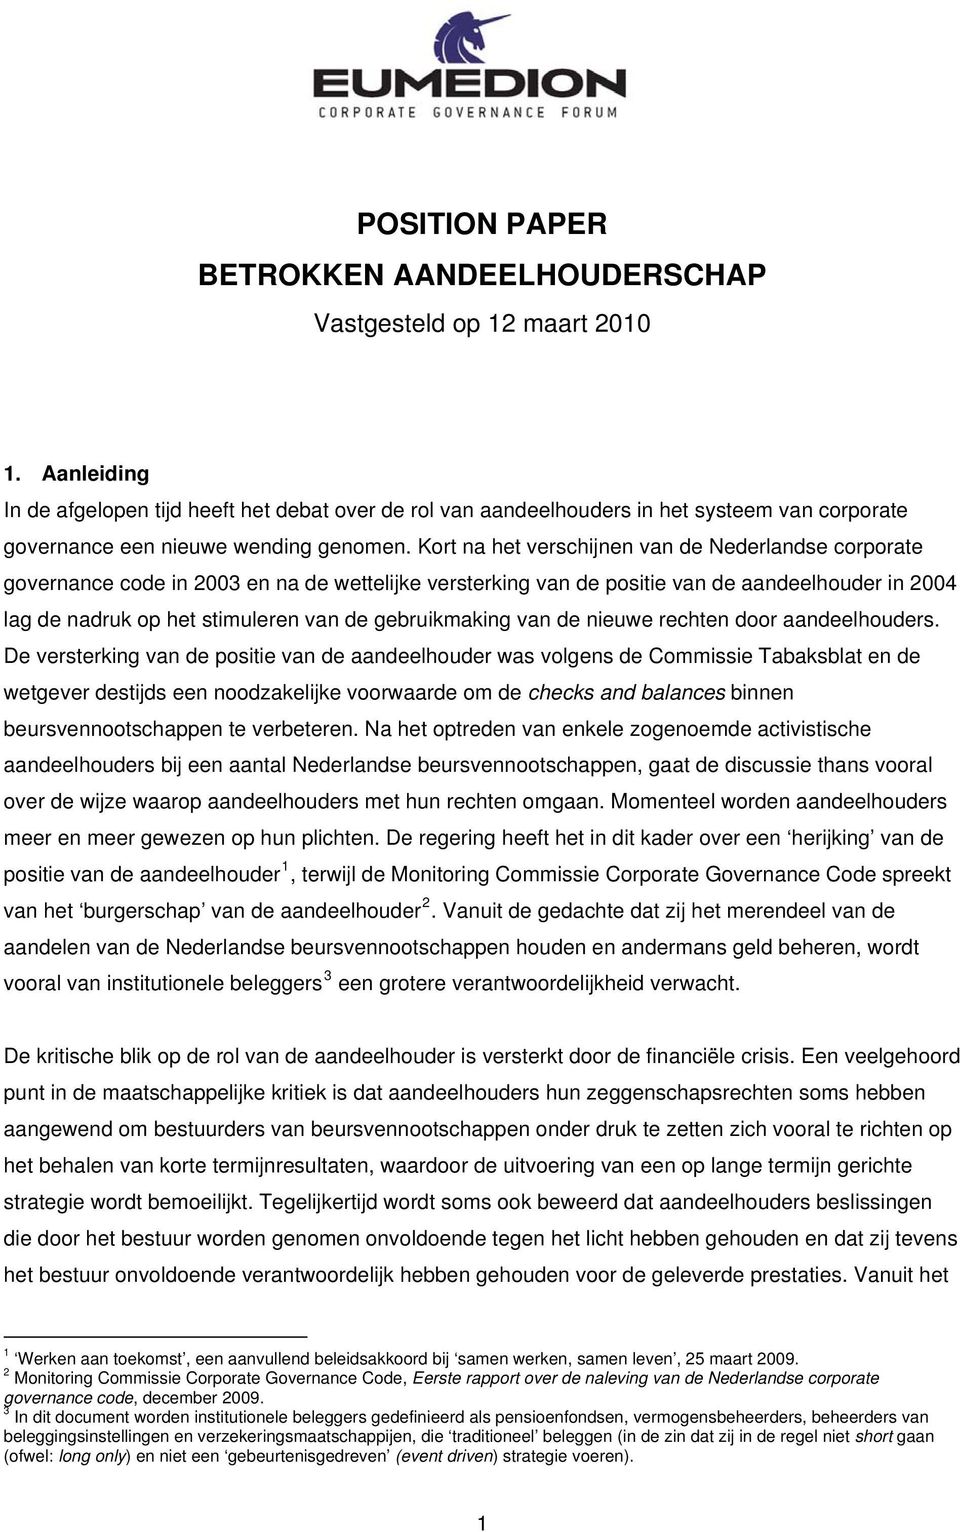 Kort na het verschijnen van de Nederlandse corporate governance code in 2003 en na de wettelijke versterking van de positie van de aandeelhouder in 2004 lag de nadruk op het stimuleren van de